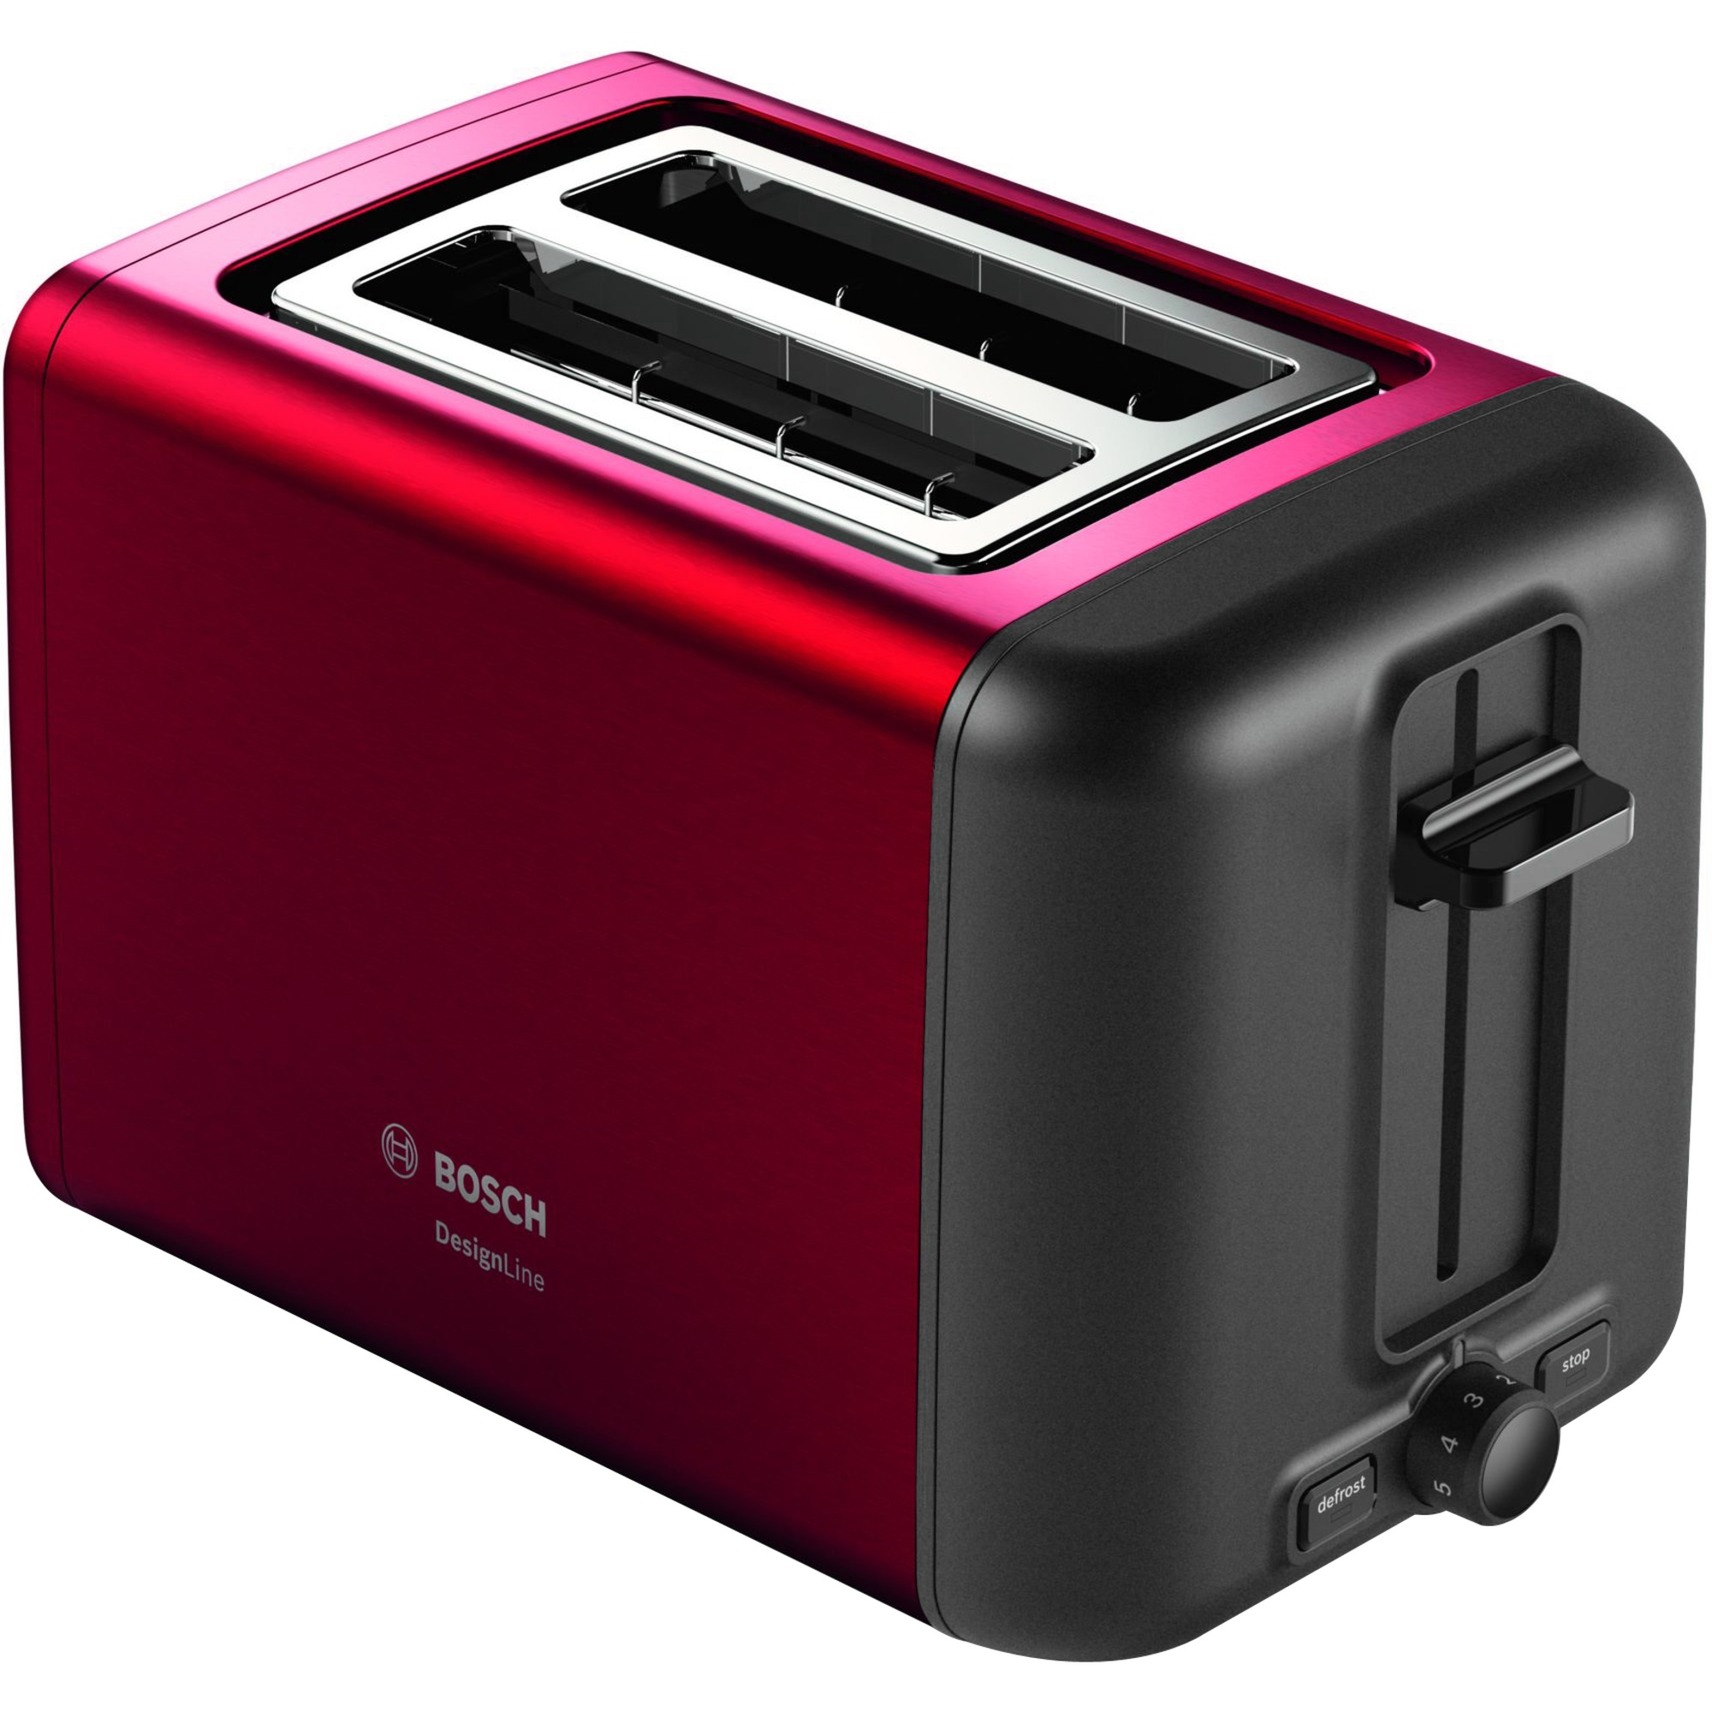 Image of Alternate - Kompakt-Toaster DesignLine TAT3P424DE online einkaufen bei Alternate